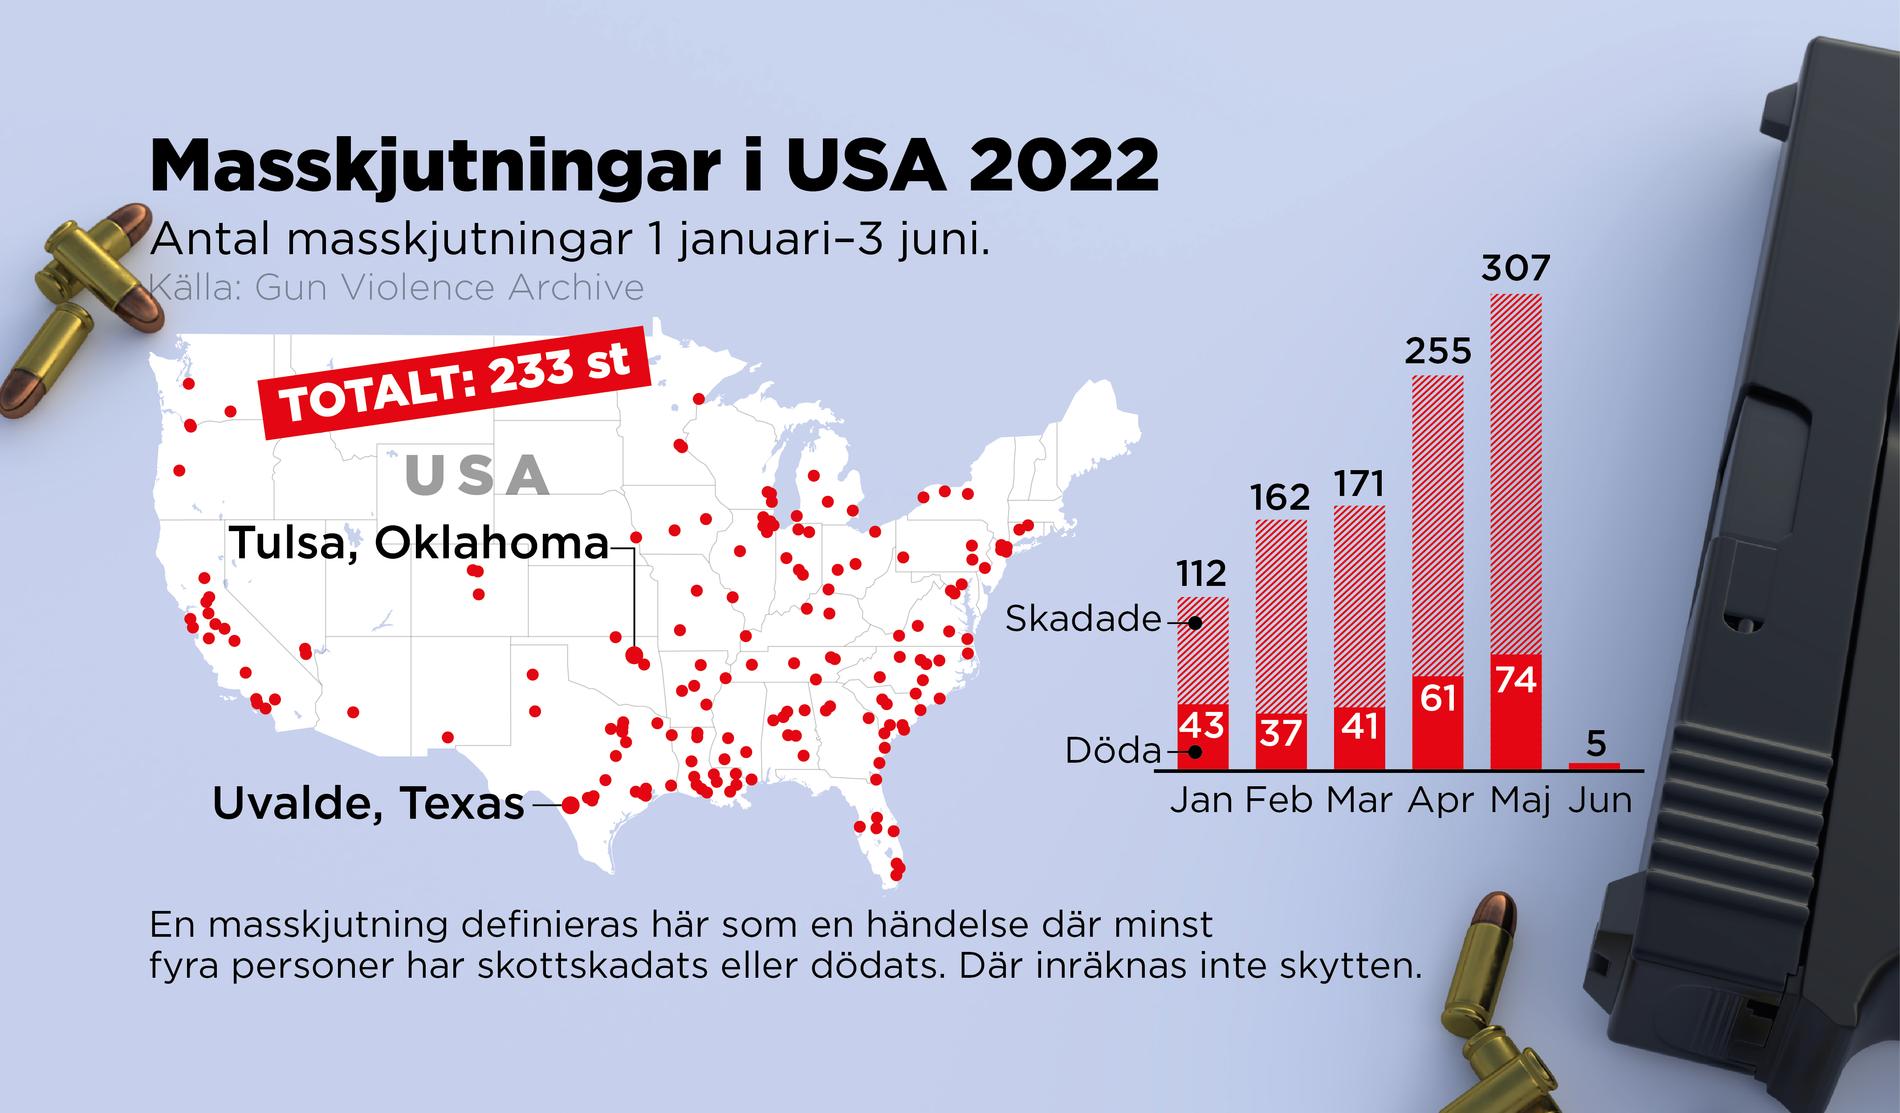 Antal masskjutningar i USA under 2022, fram till 3 juni.